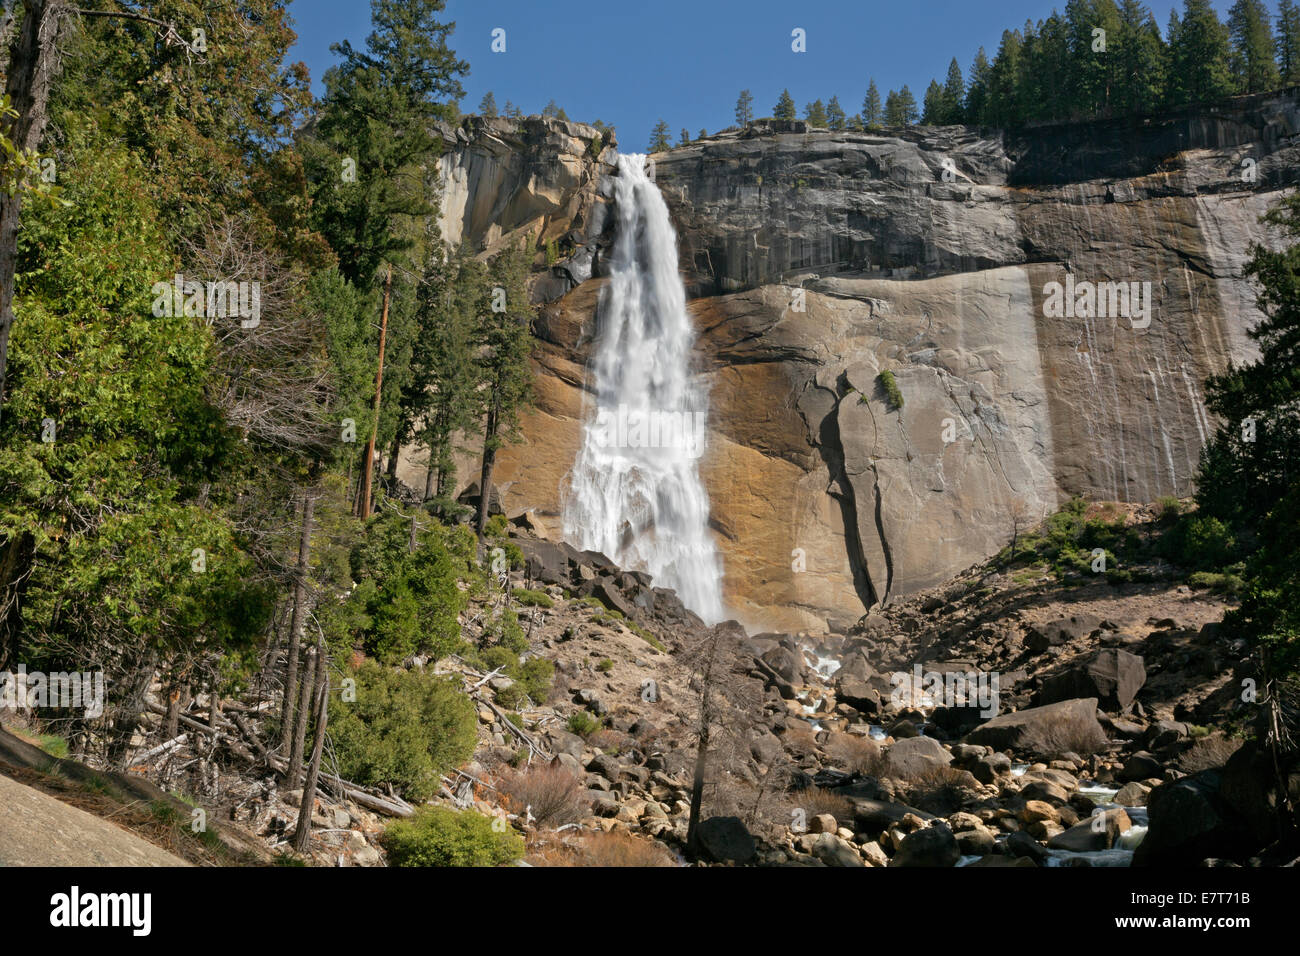 CA02309-00...CALIFORNIE - Nevada Fall sur la Merced de la Mist Trail dans le Parc National Yosemite. Banque D'Images